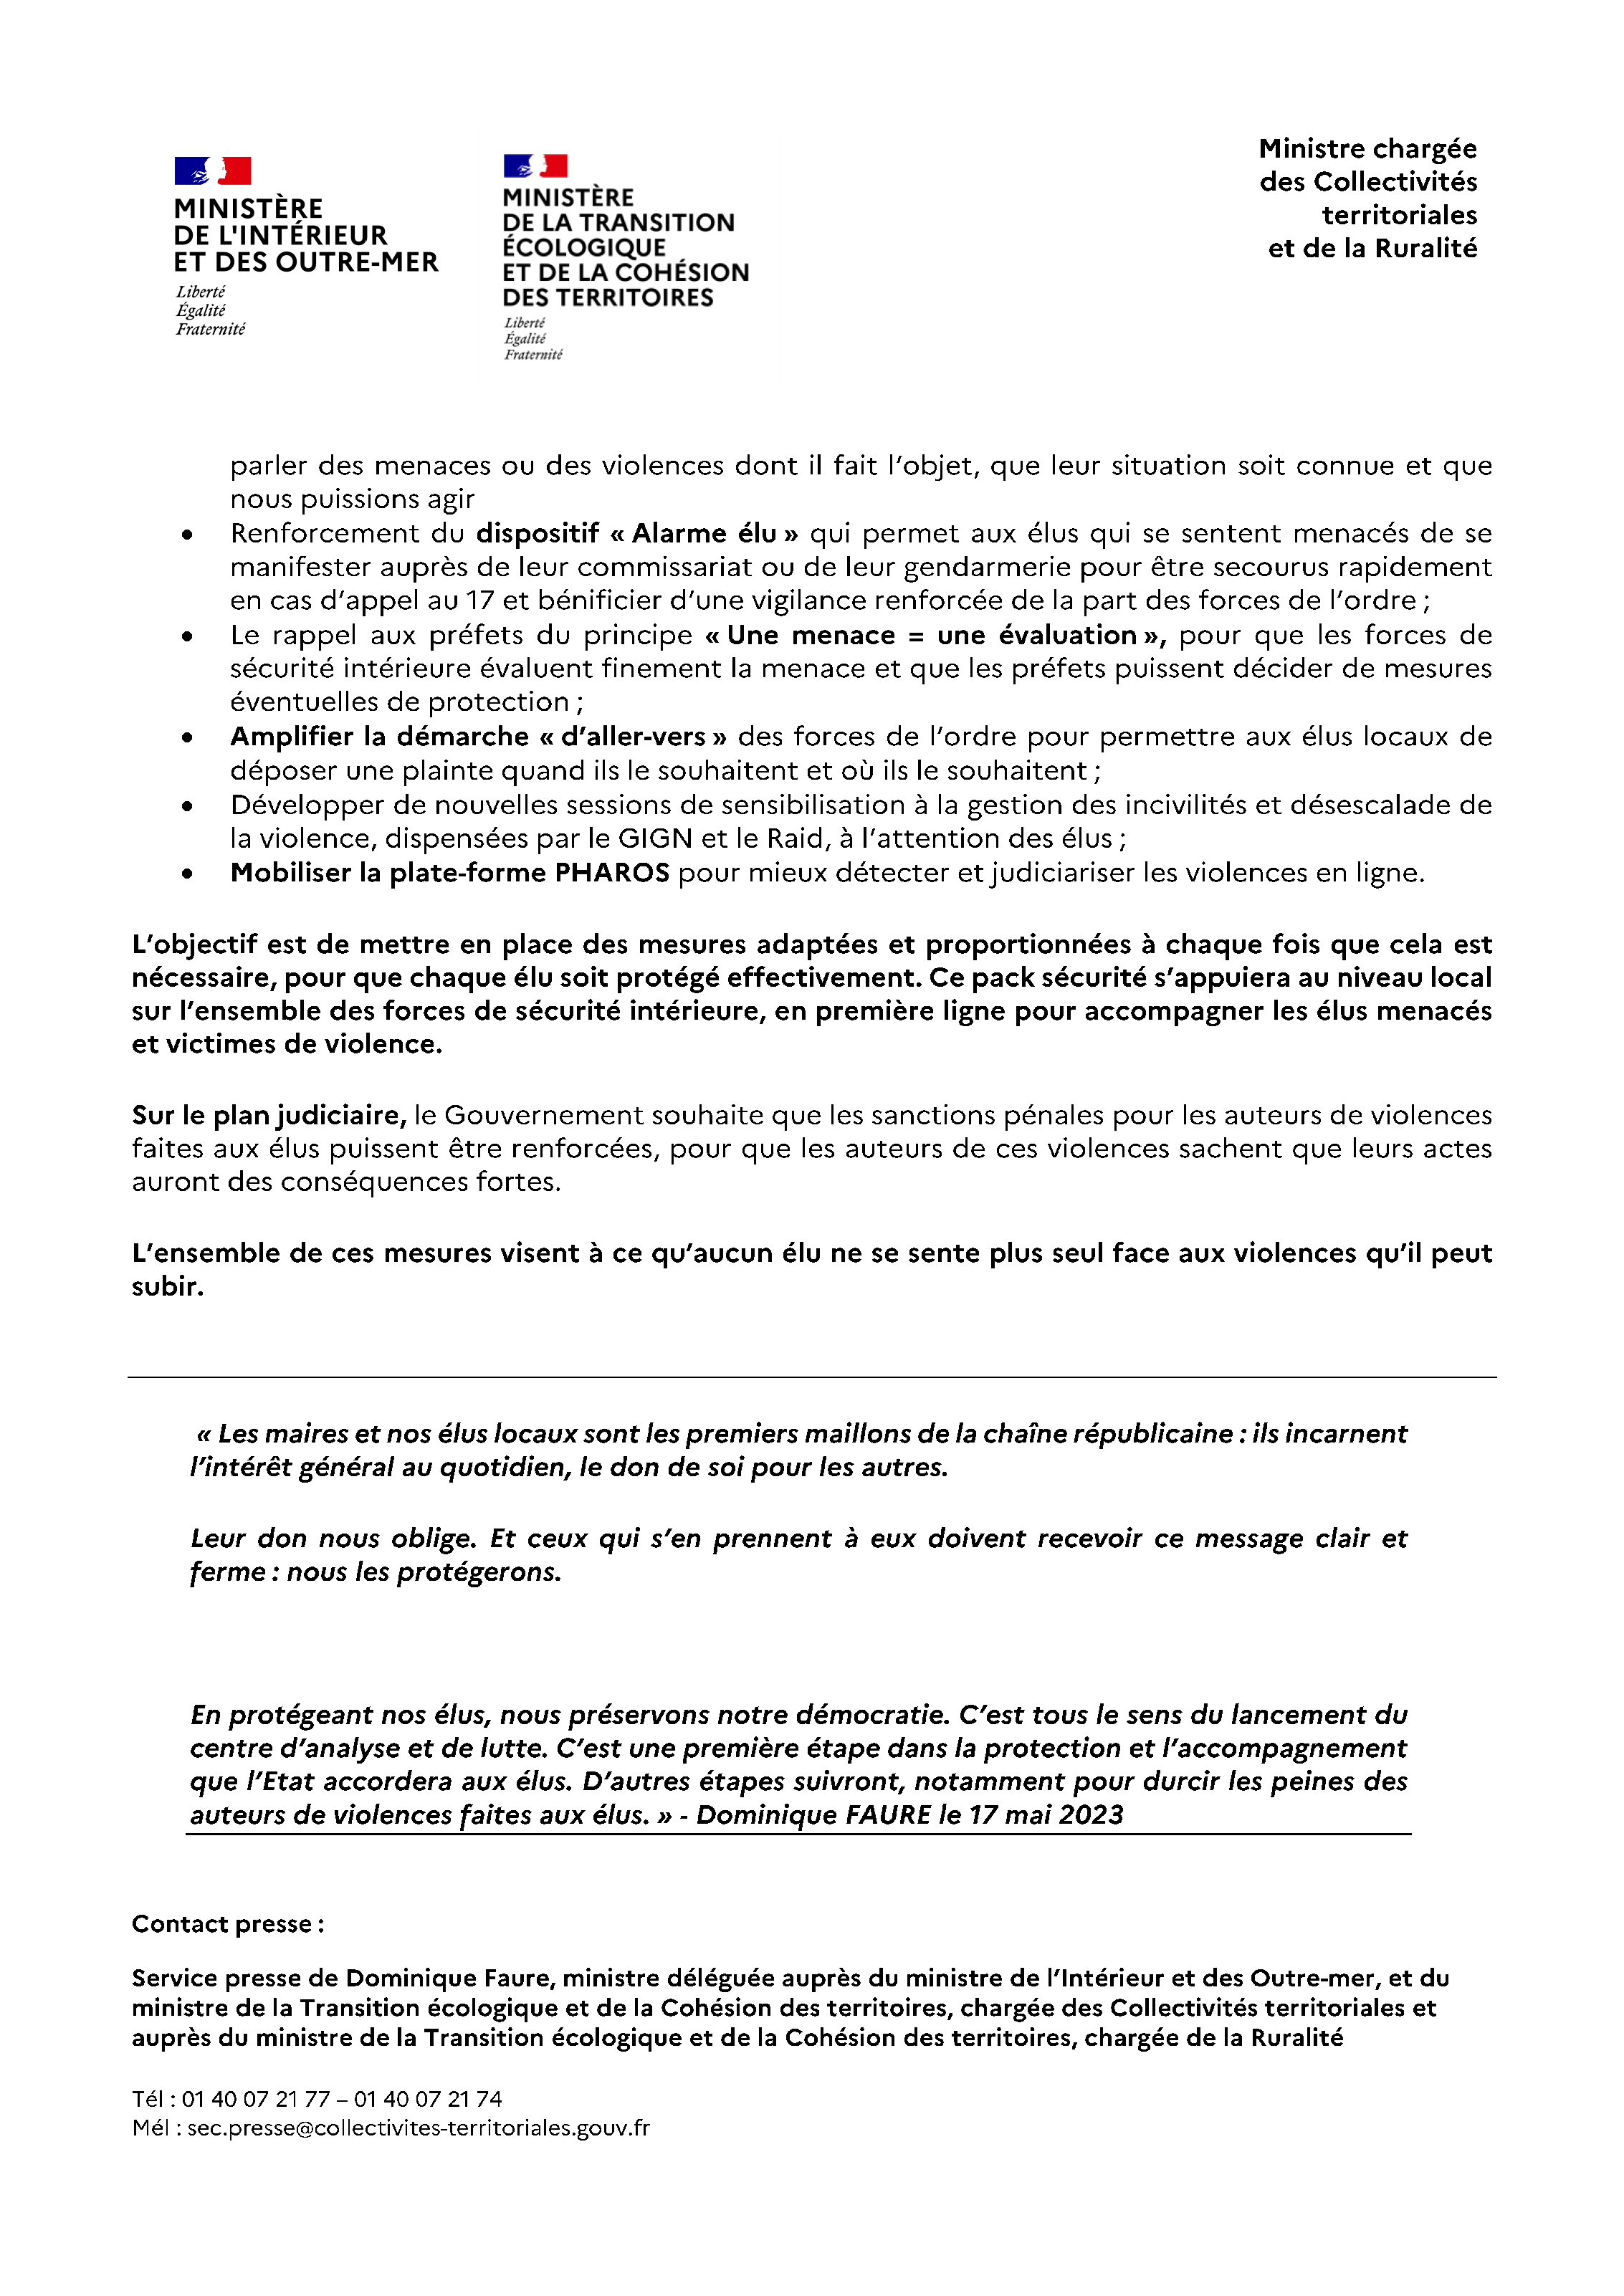 CP Dominique Faure présente de nouvelles mesures pour protéger les élus locaux[1]_Page_2